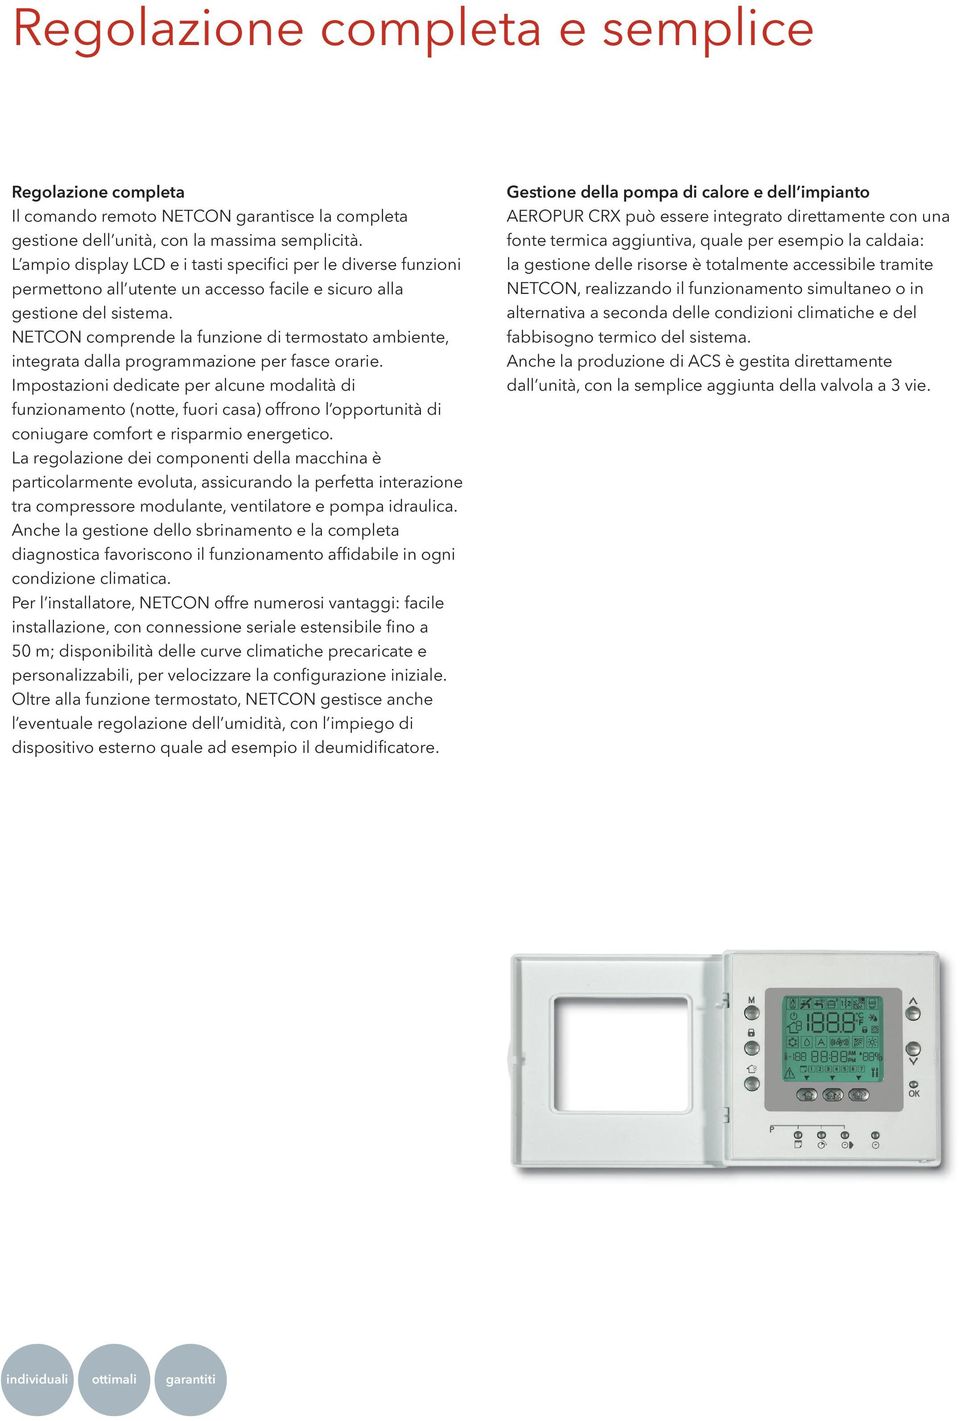 NETCON comprende la funzione di termostato ambiente, integrata dalla programmazione per fasce orarie.